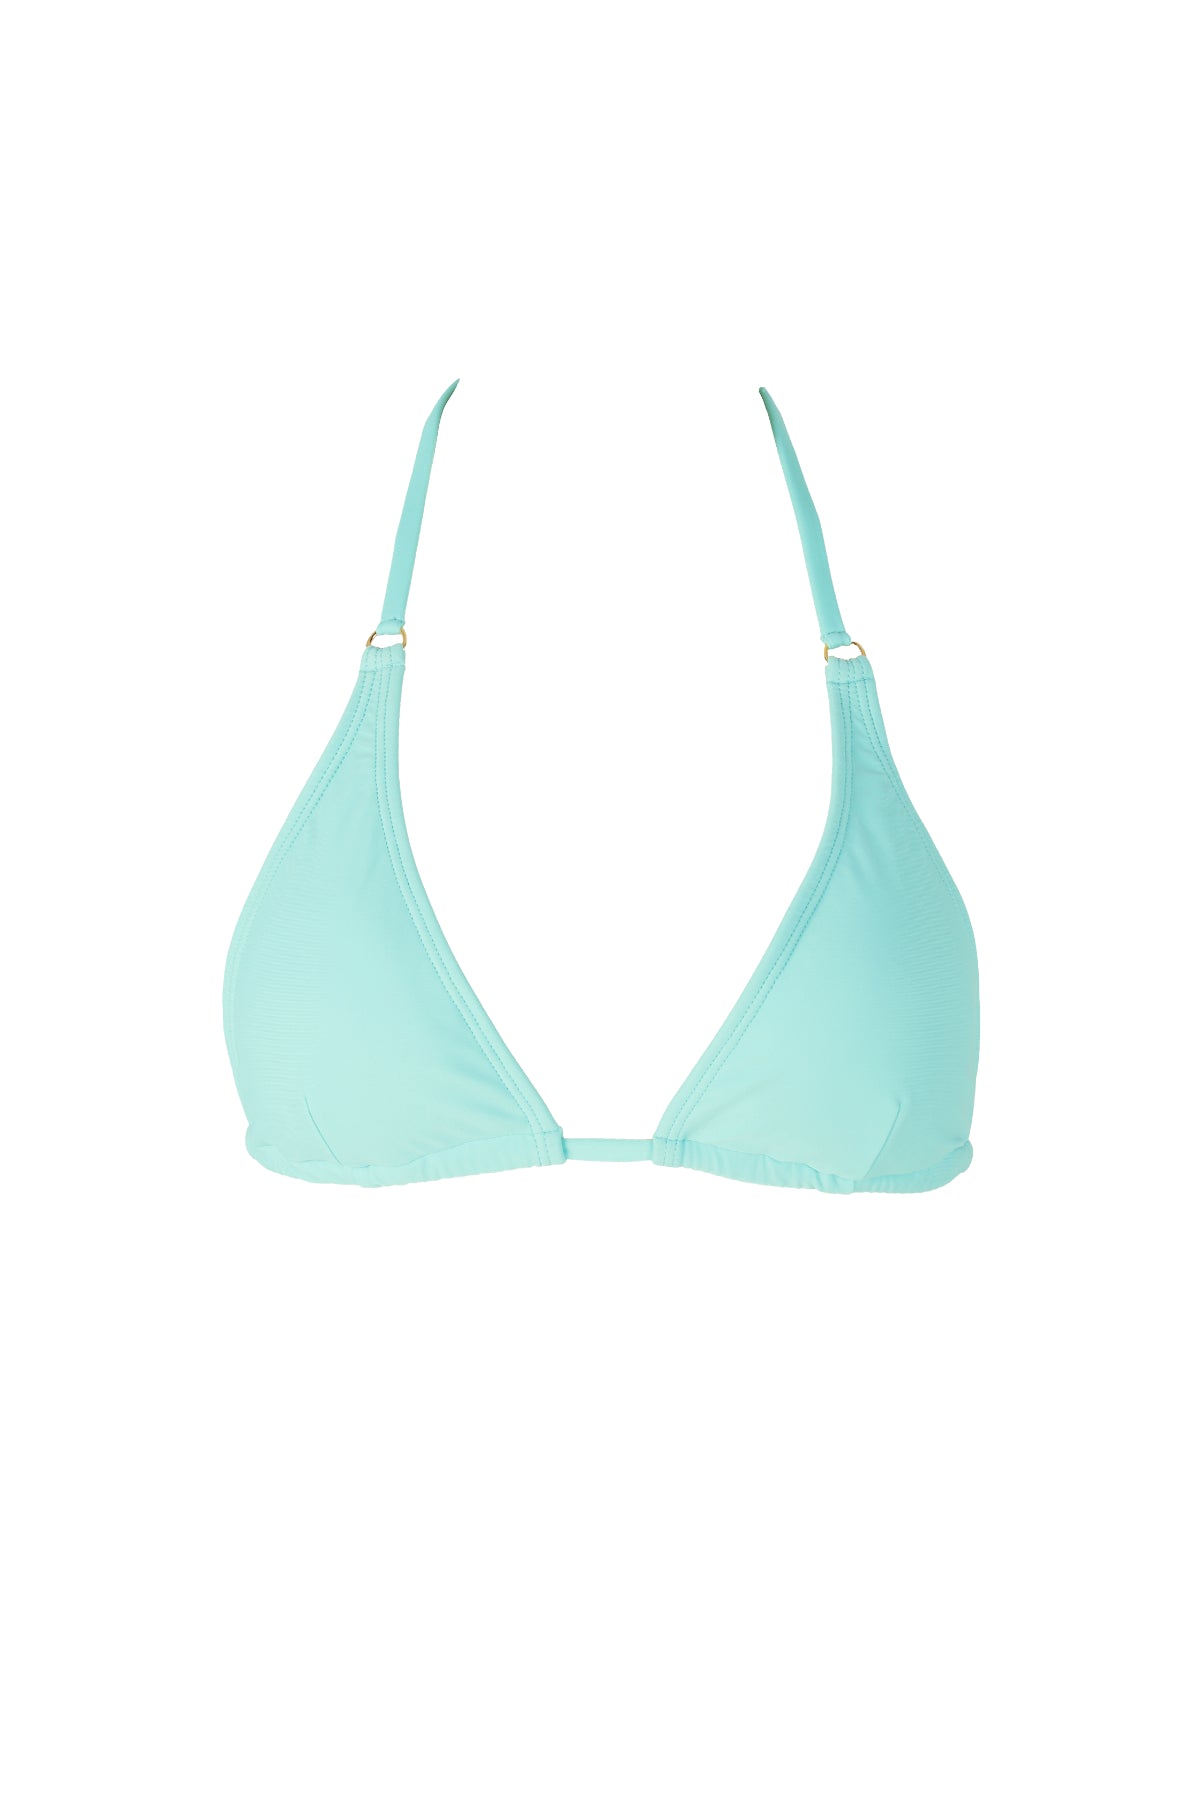 blue triangle top bikini luxury swimwear koraru sustainable swimwear halther bikini top 